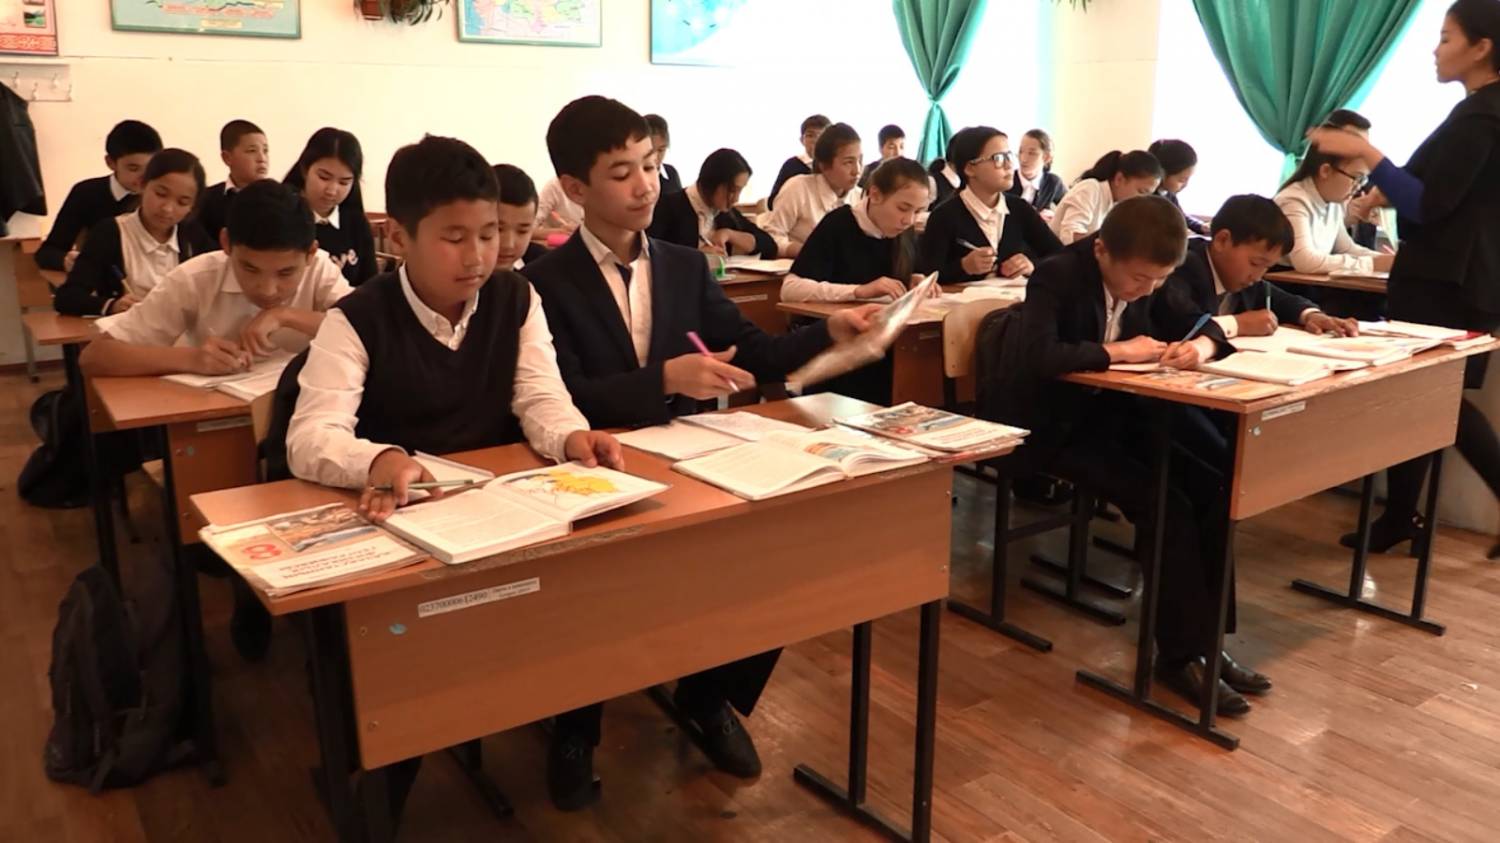 Цена за школьную форму для младшеклассников Шымкента, варьируется от 8 до 9 тысяч тенге